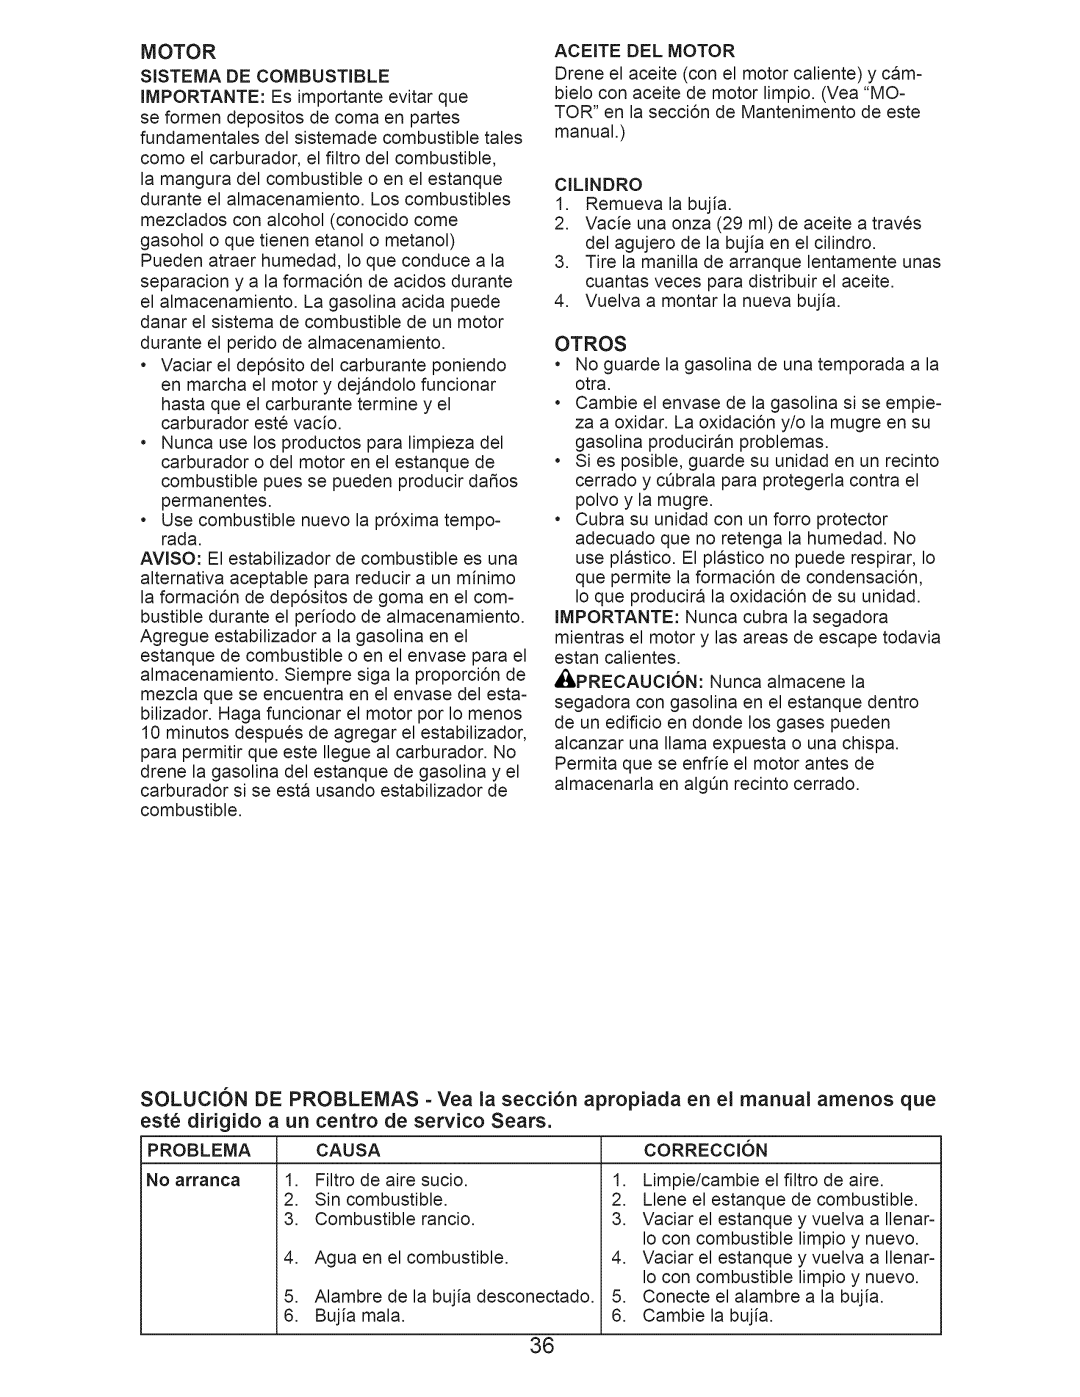 Craftsman 917.374352 owner manual Aceite DEL Motor, Cilindro, Otros, Problema Causa 